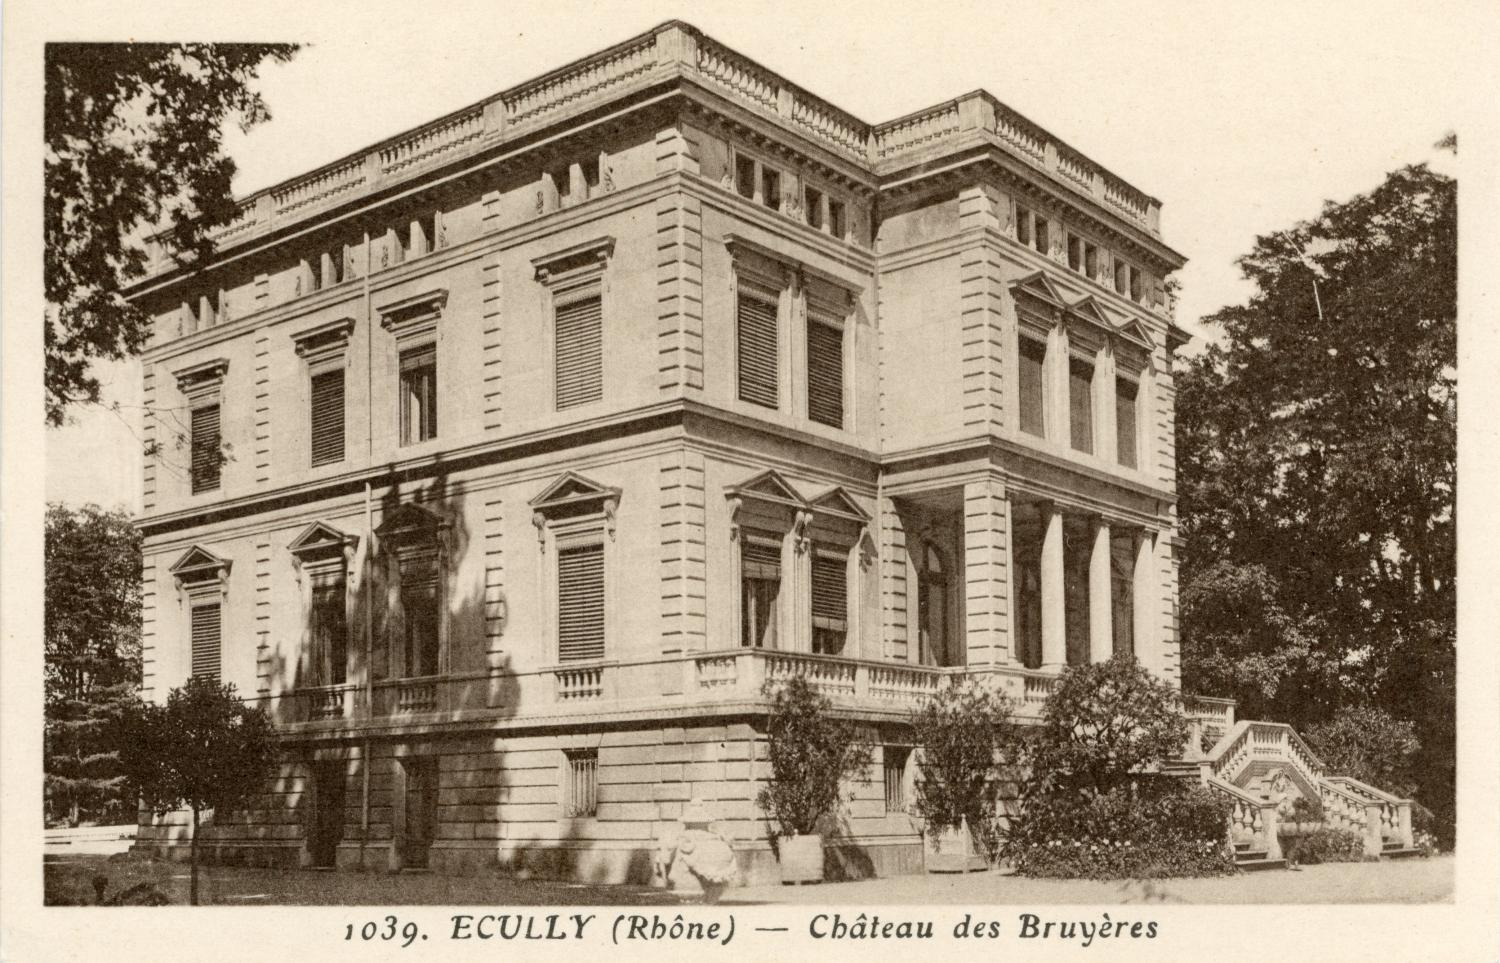 Ecully (Rhône). - Château des Bruyères